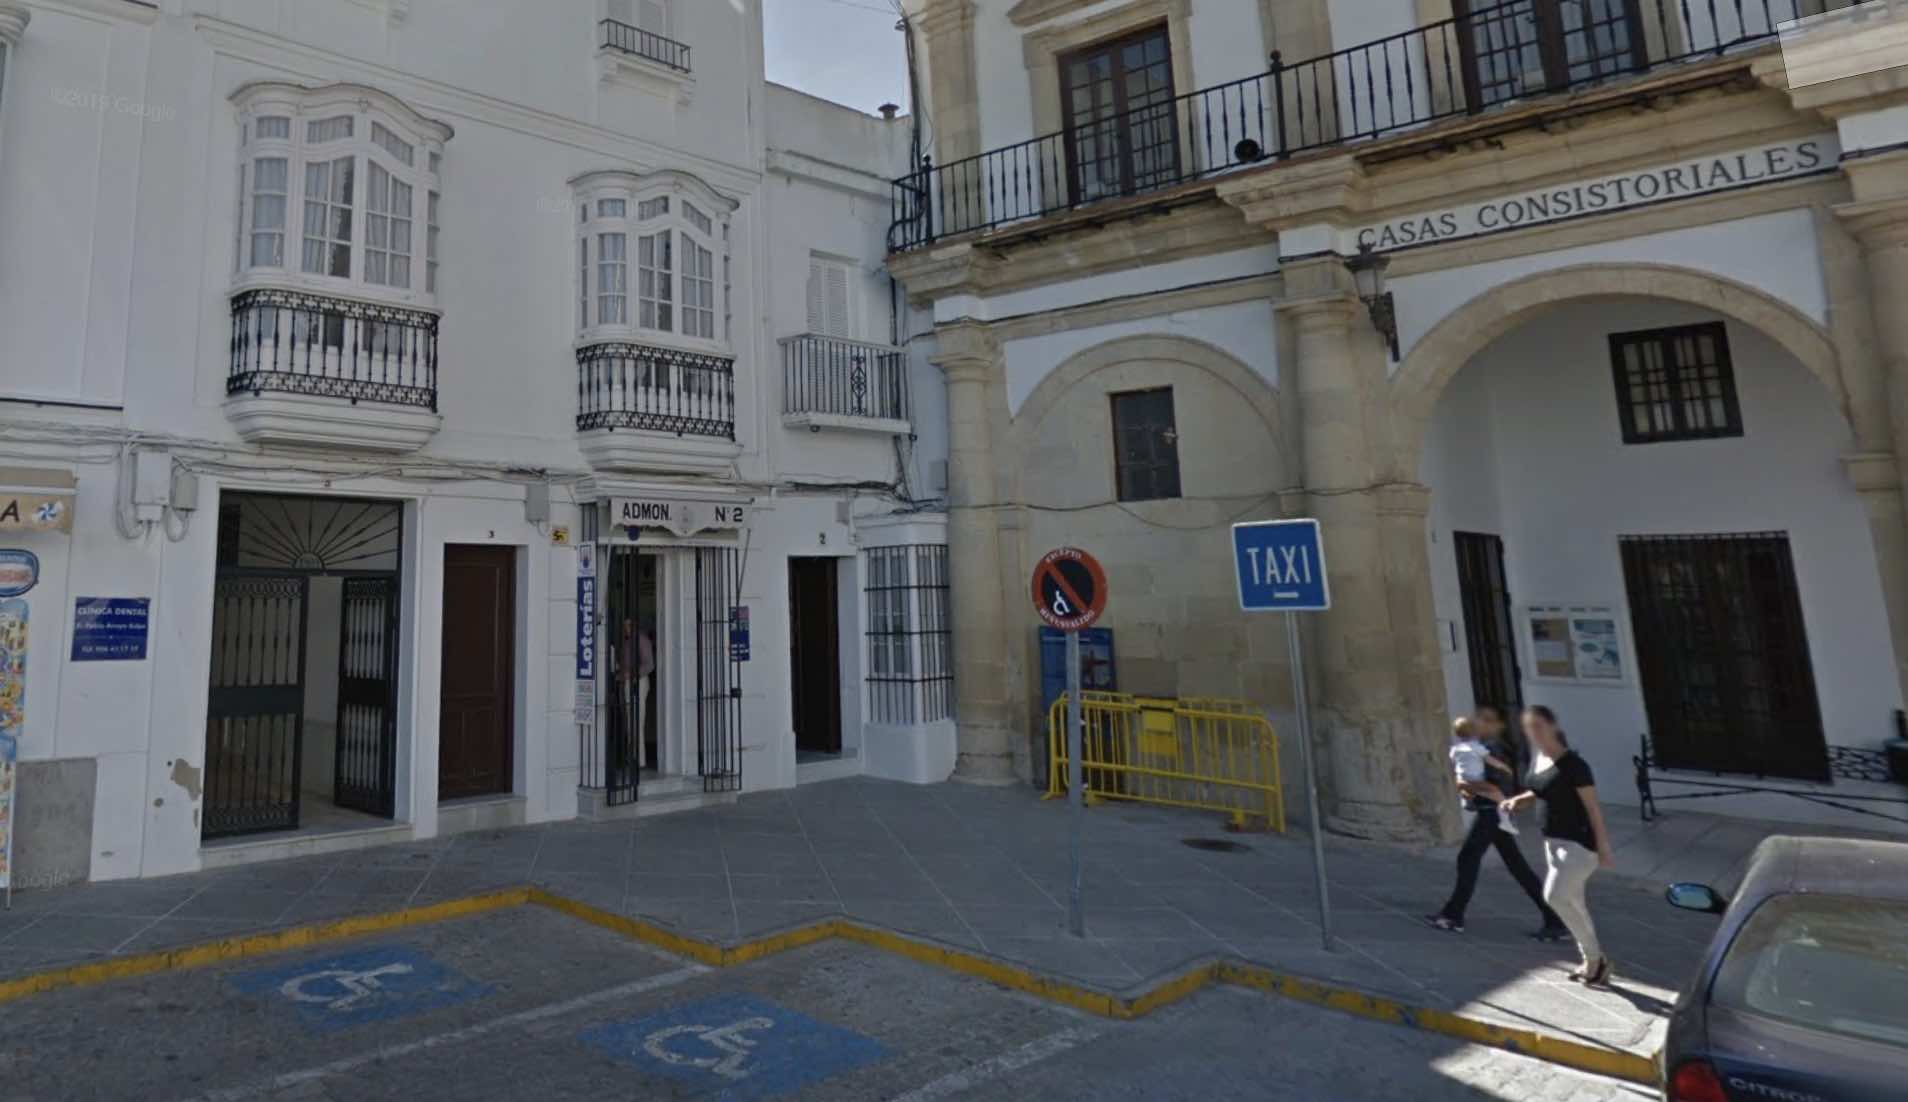 La administración de loterías en la plaza de España de Medina, en una imagen de Google.